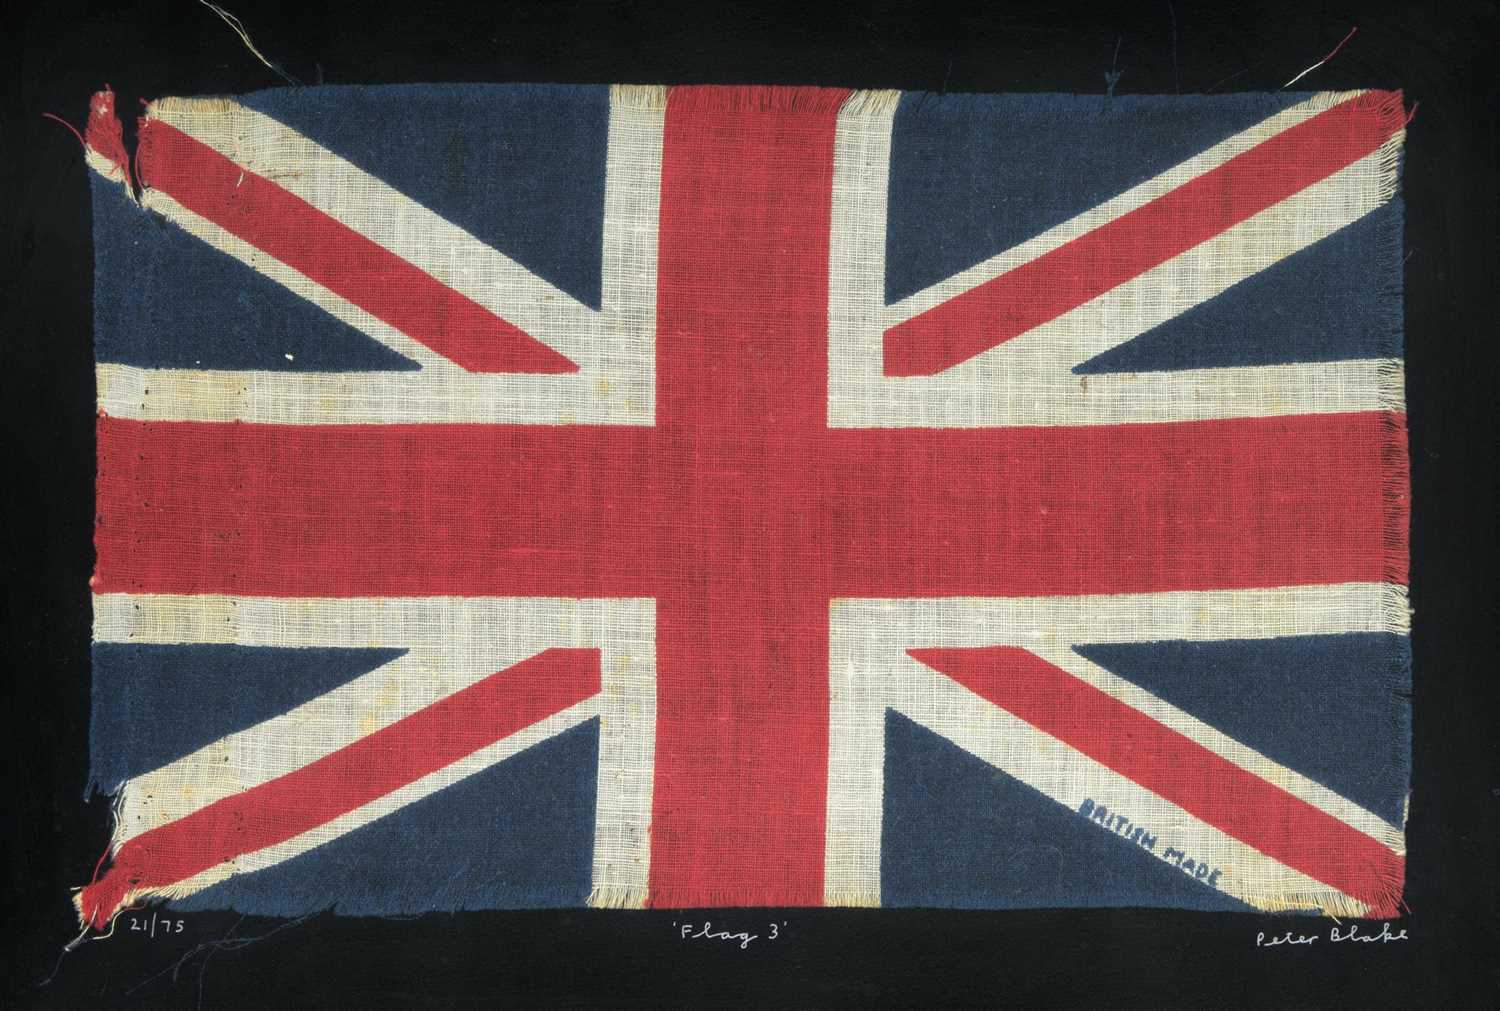 Lot 415 - Peter Blake (British b.1932), 'Flag 3', 2009